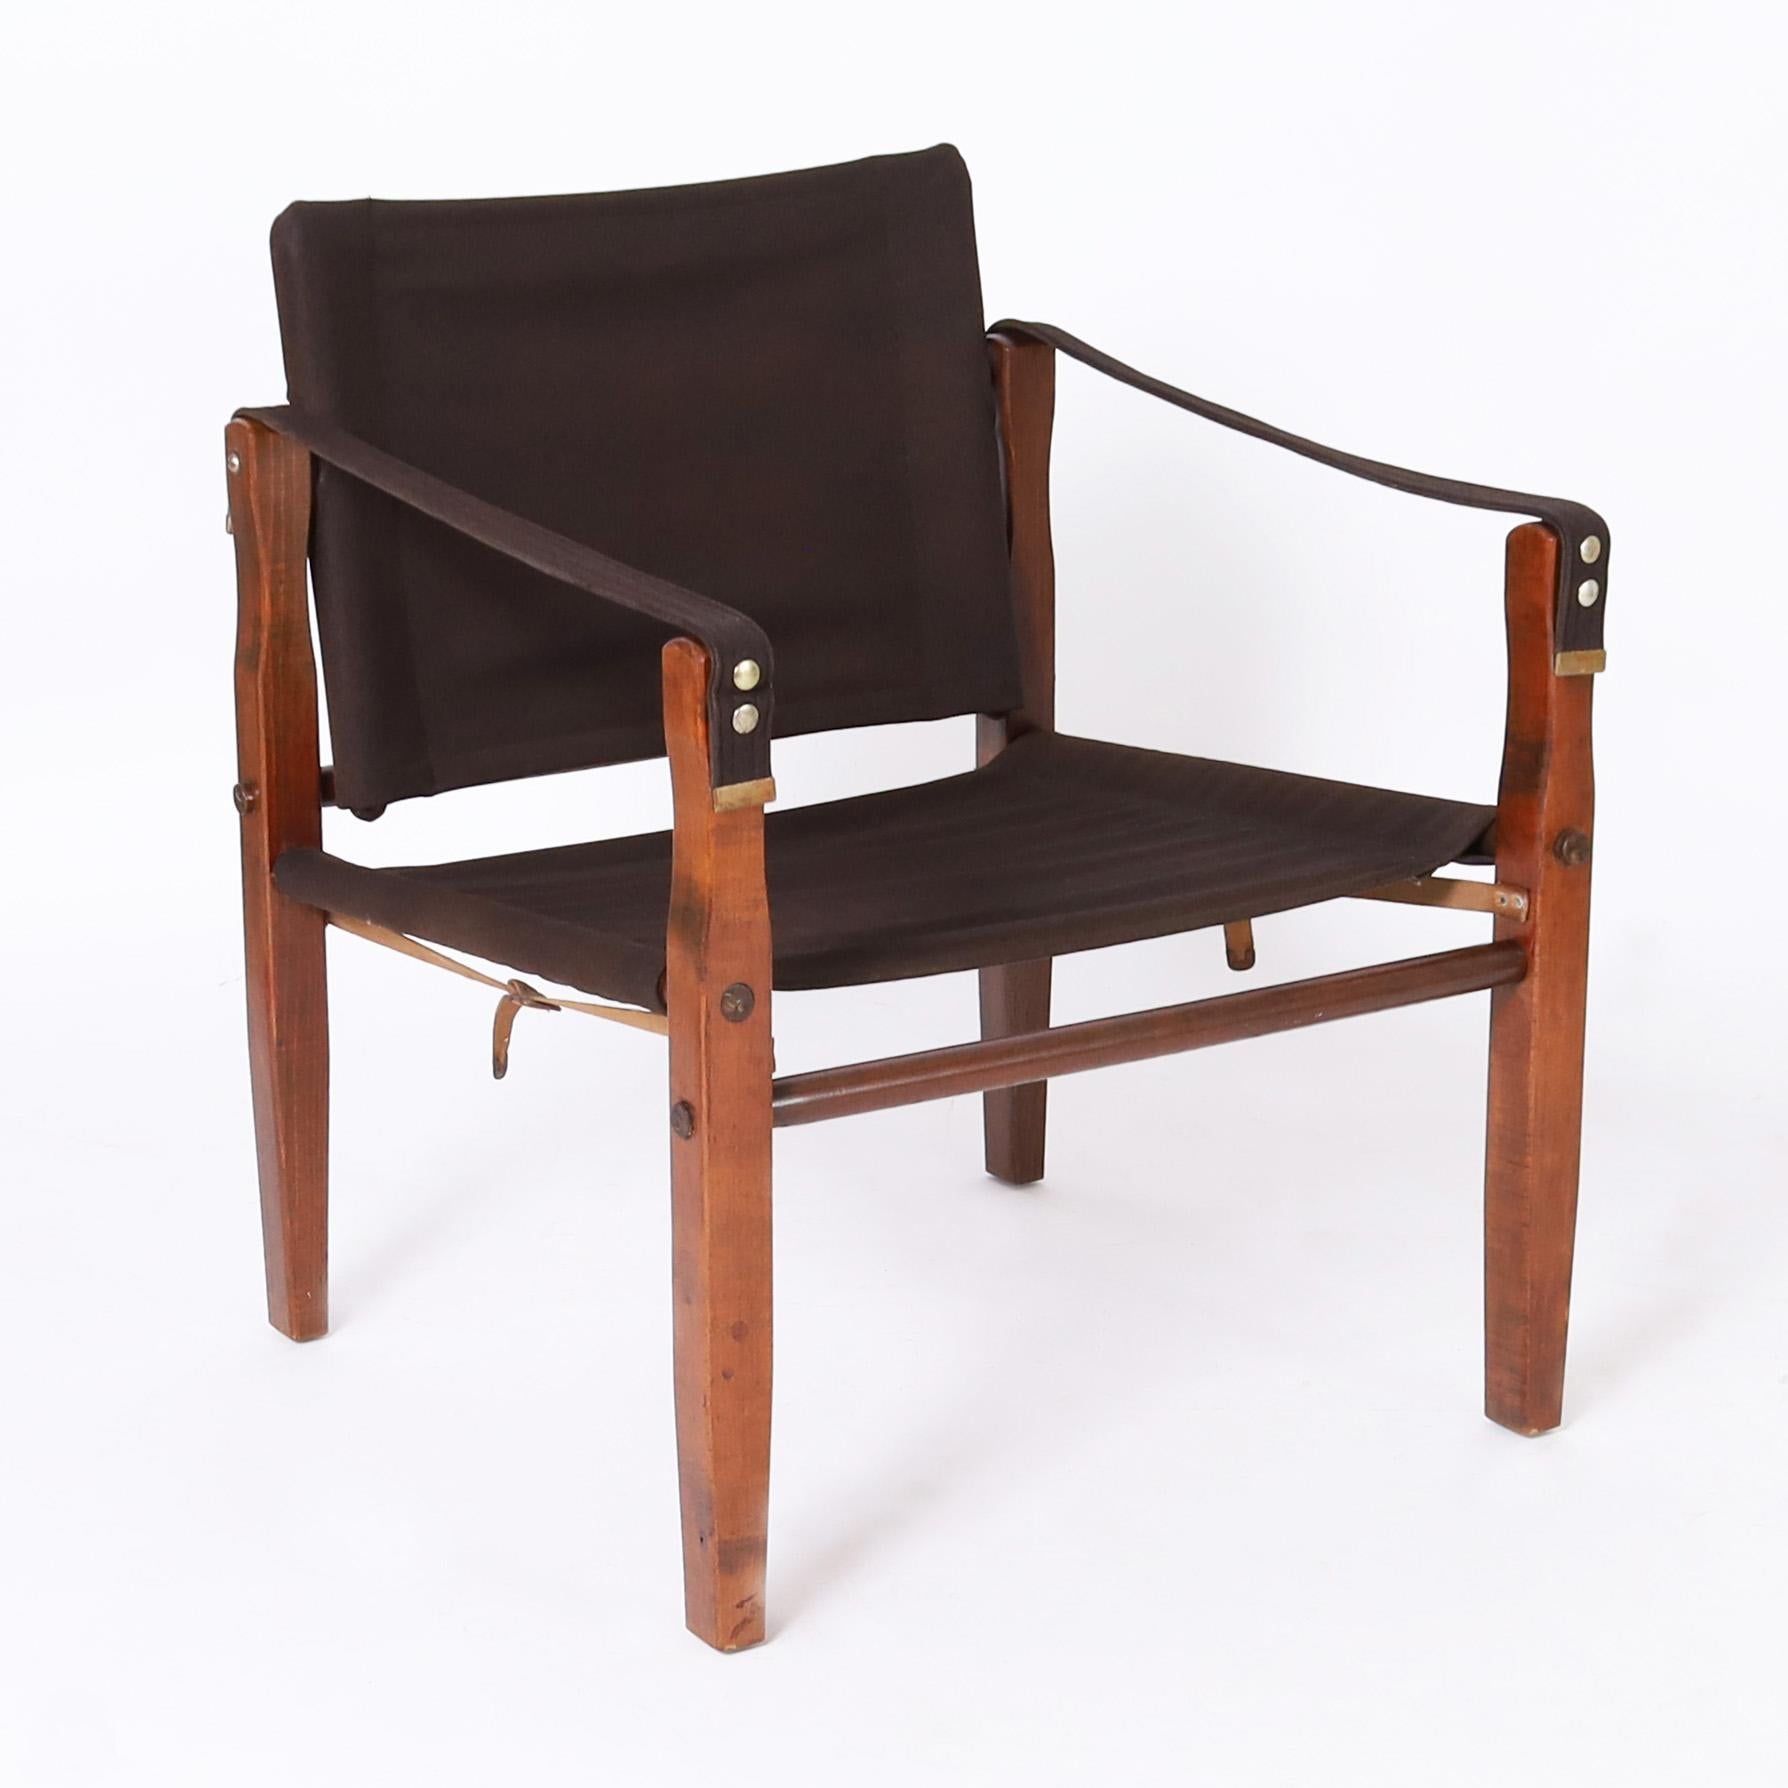 Ensemble de quatre chaises vintage British Coloni fabriquées en érable teinté acajou avec une construction chevillée dans un style safari avec des accoudoirs, des sièges et des dossiers rembourrés en tissu de coton durable.